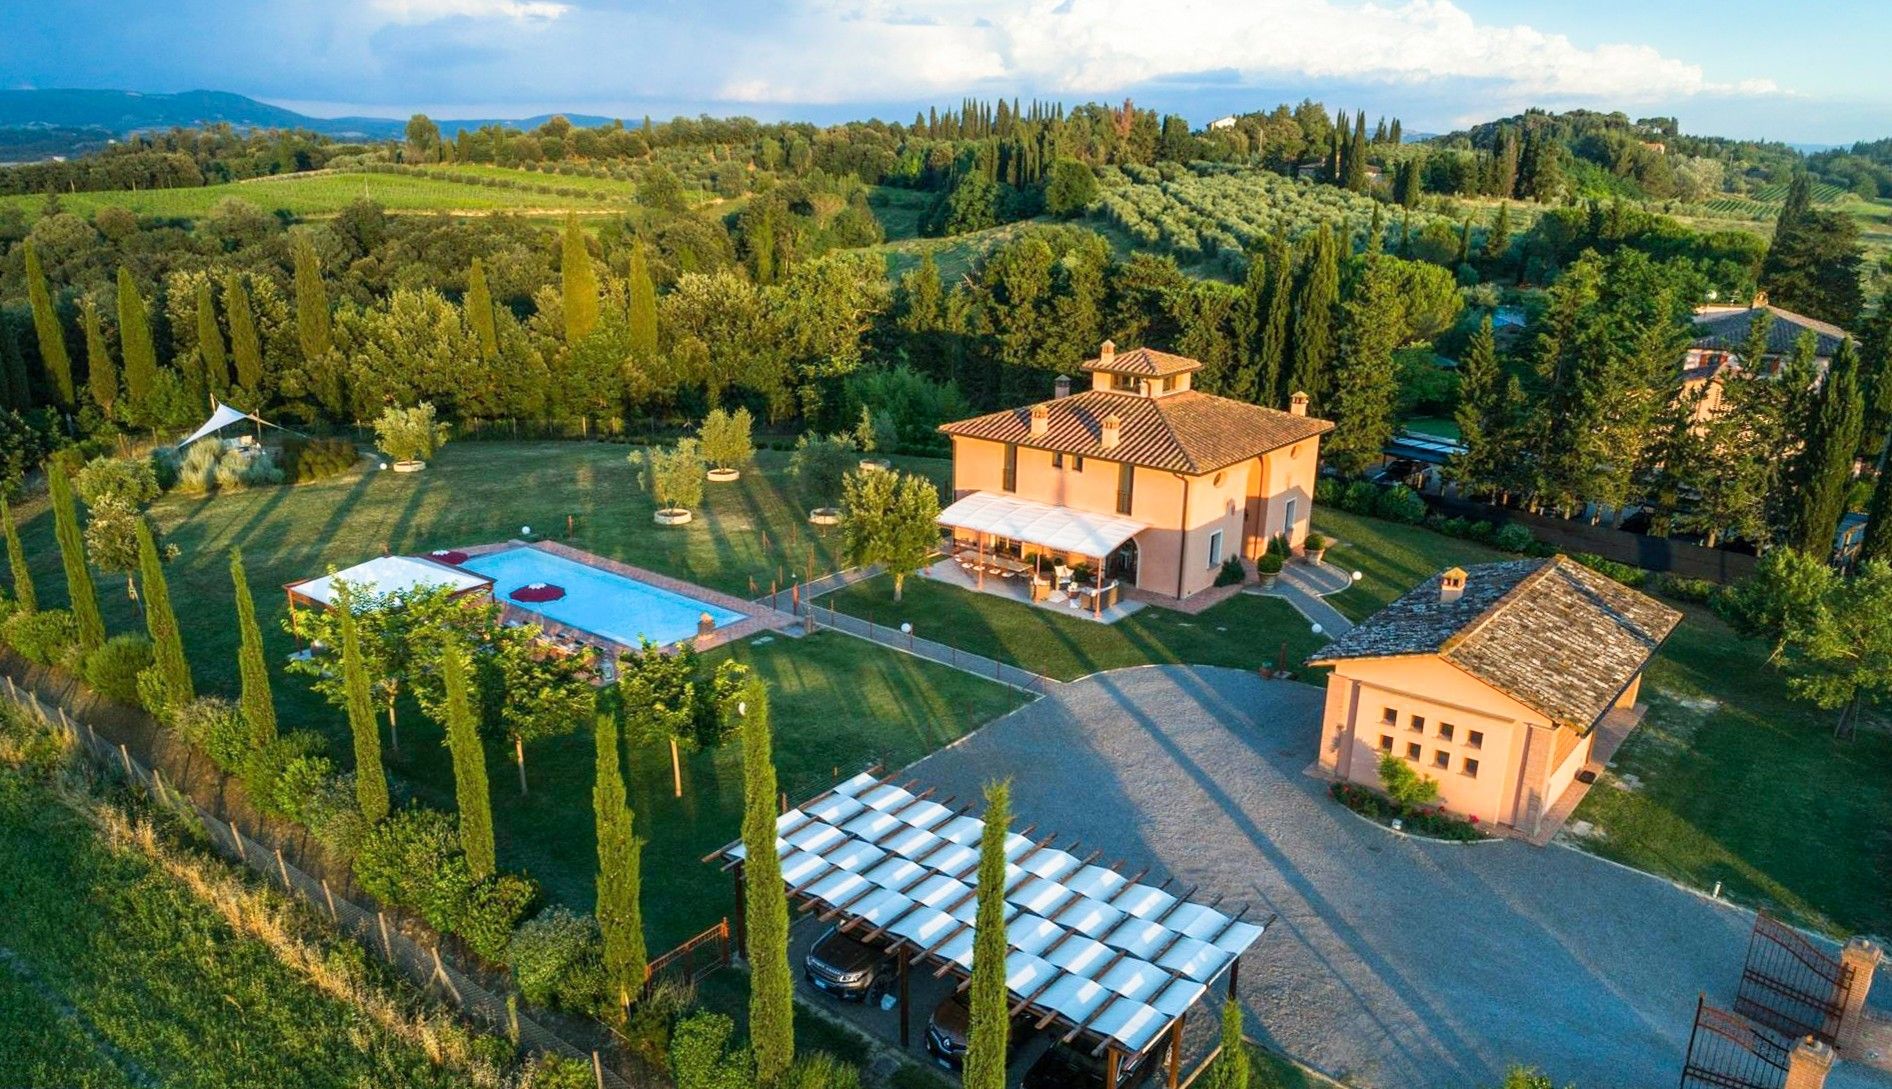 Fotos Erstklassige Toskana-Villa mit besonderem Ambiete und Aussicht